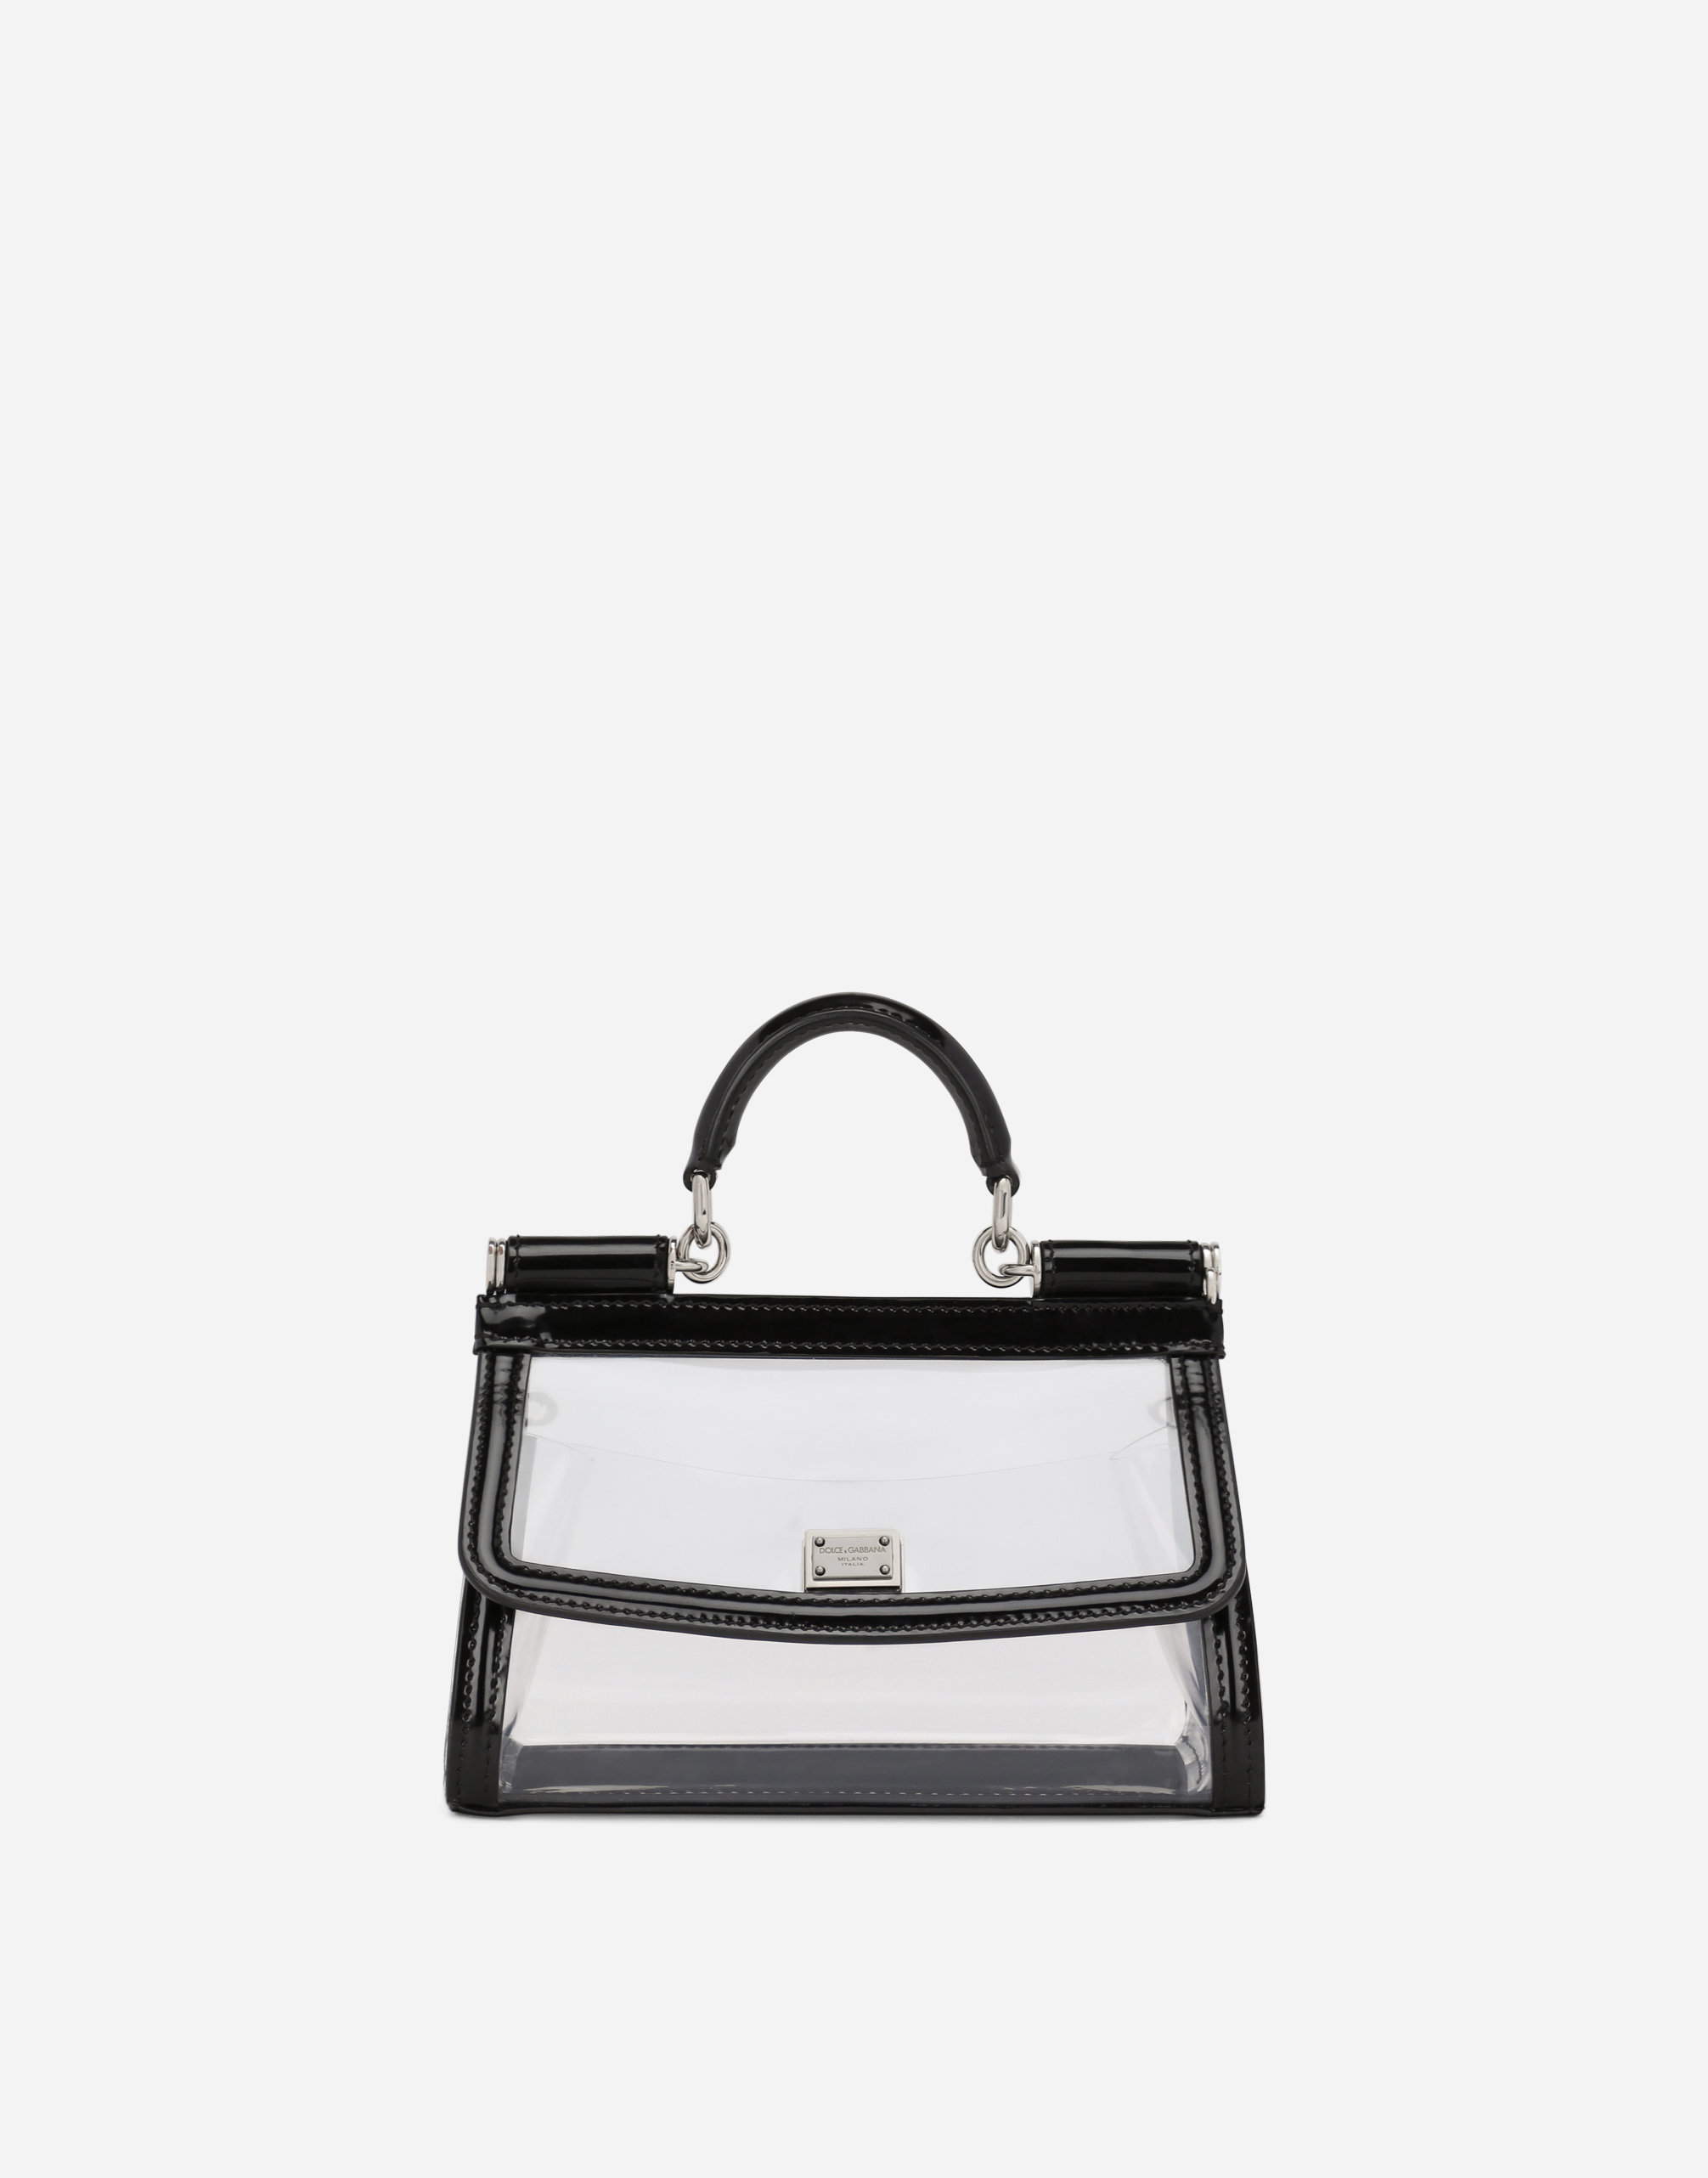 KIM DOLCE&GABBANA Small Sicily handbag in Black